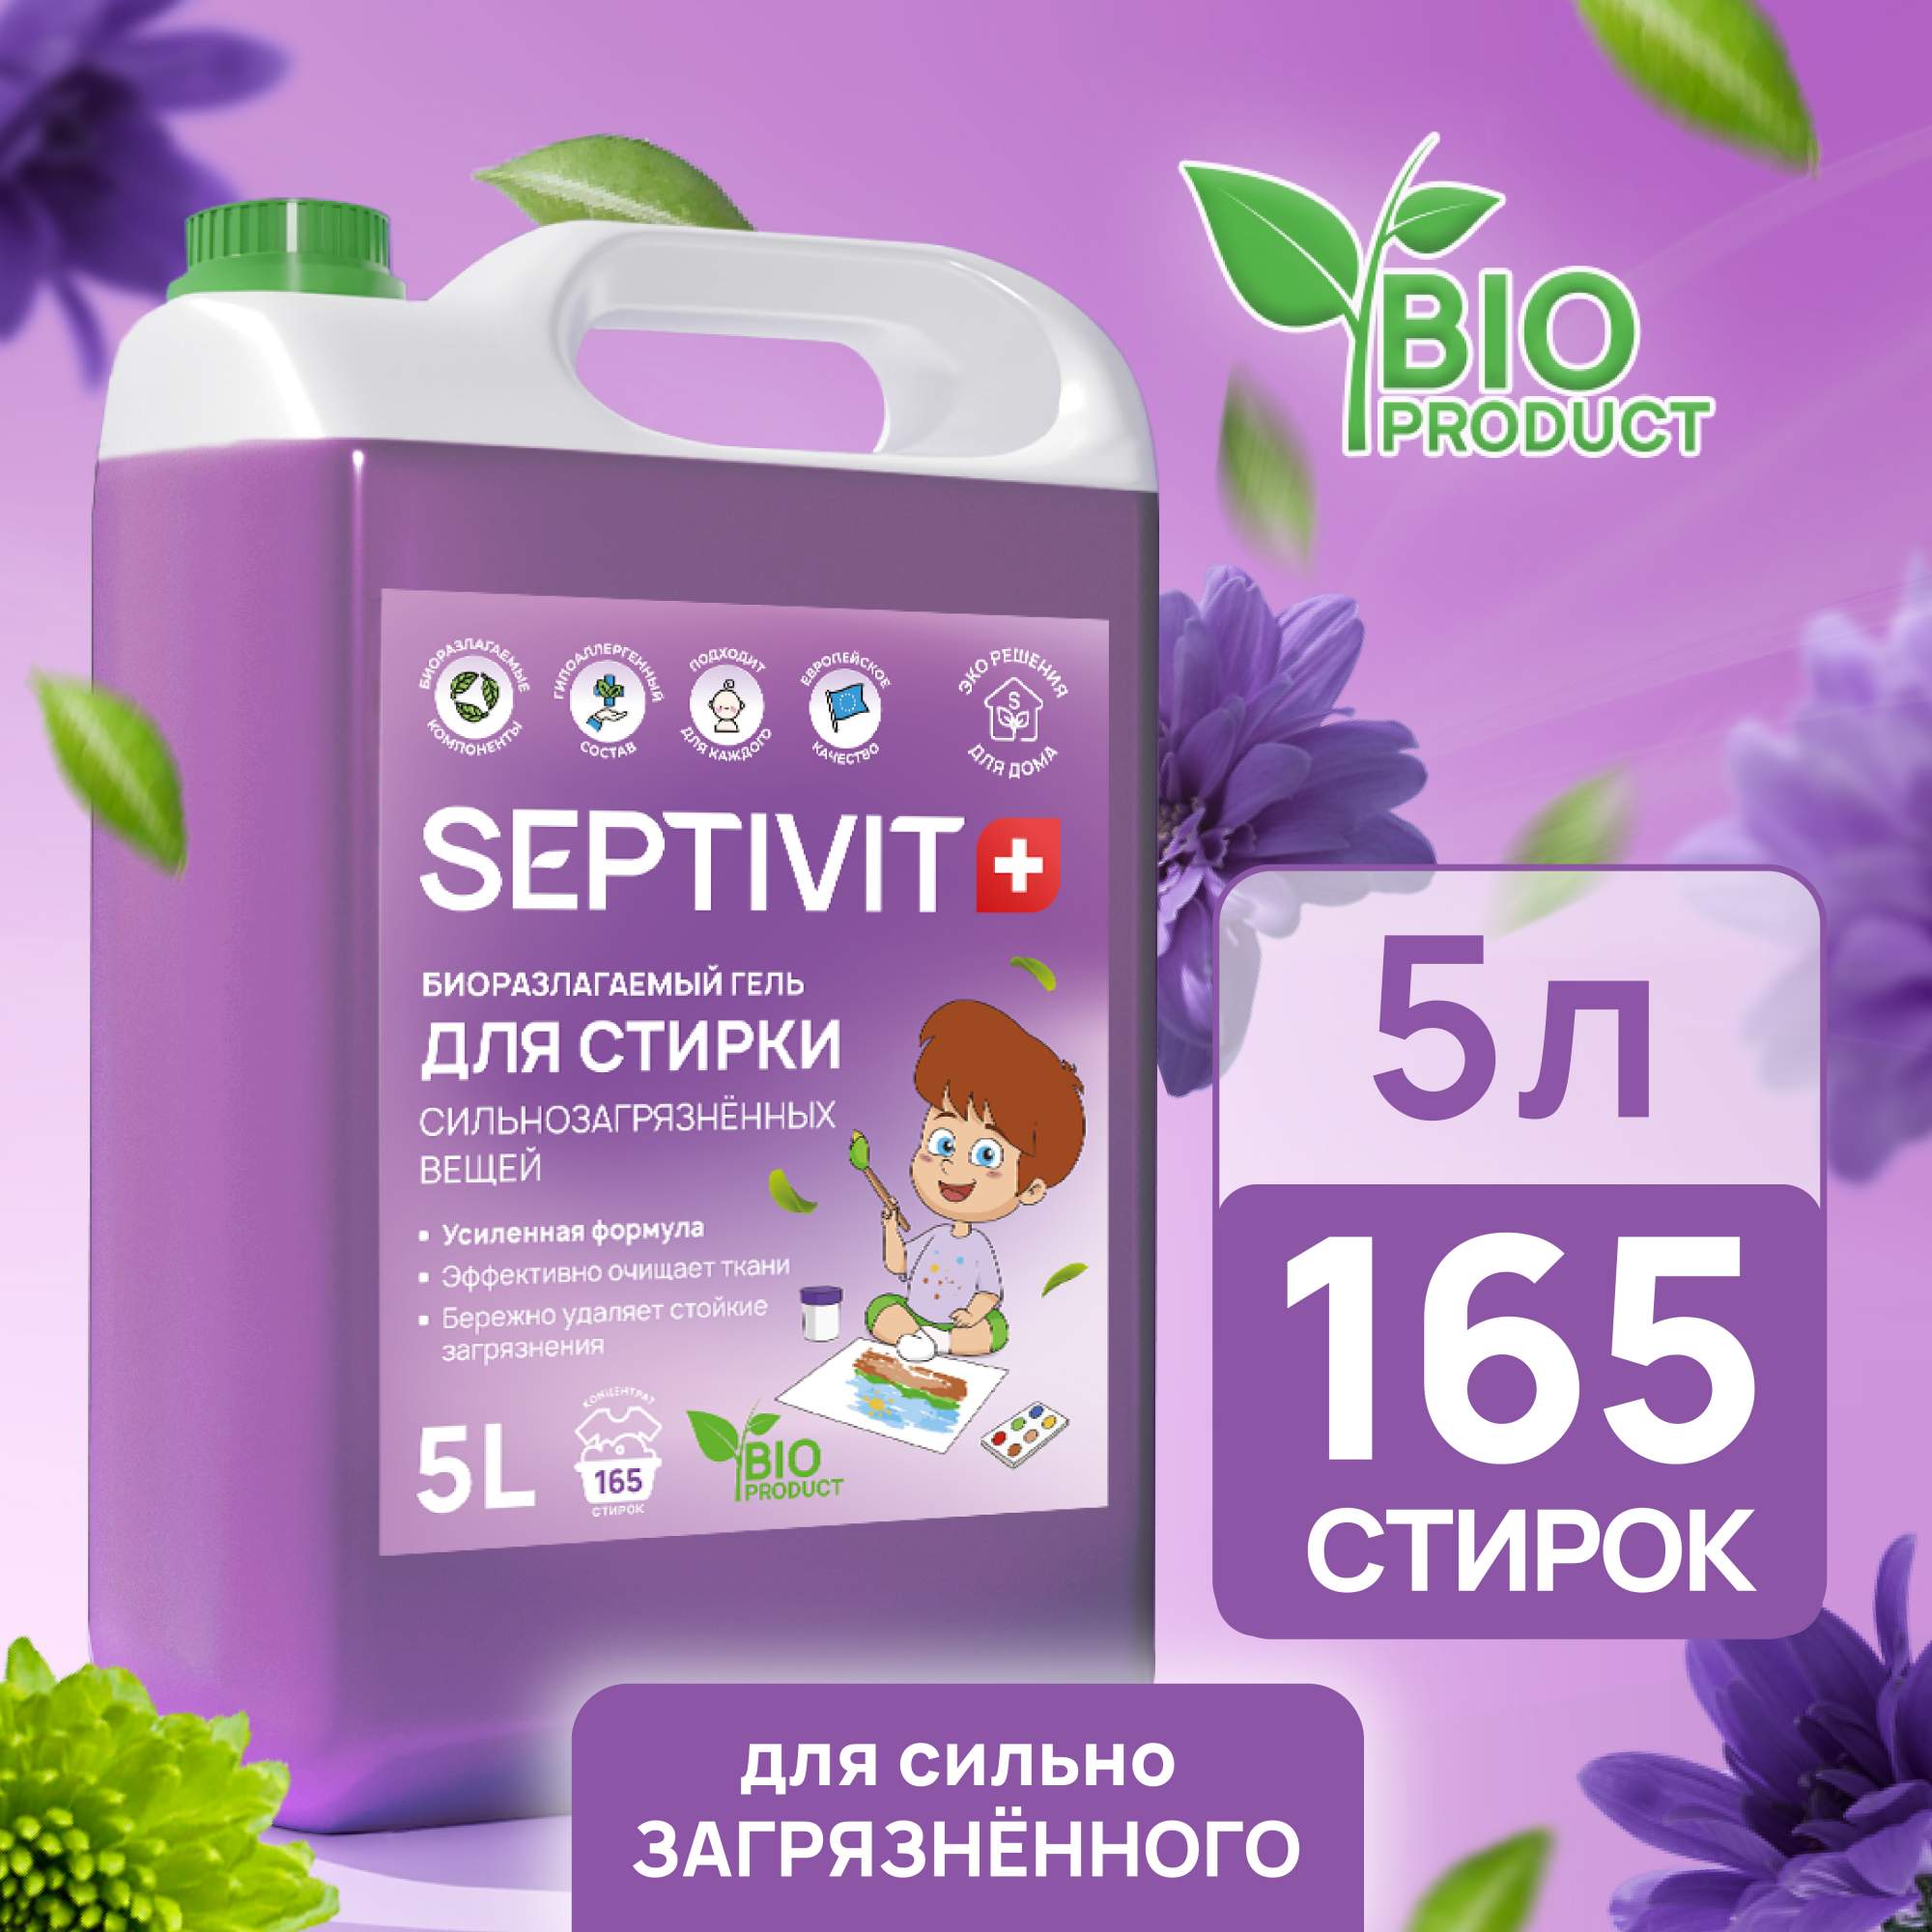 Гель для стирки сильно загрязненных вещей Septivit Premium 5л - купить в Москве, цены на Мегамаркет | 600005565998